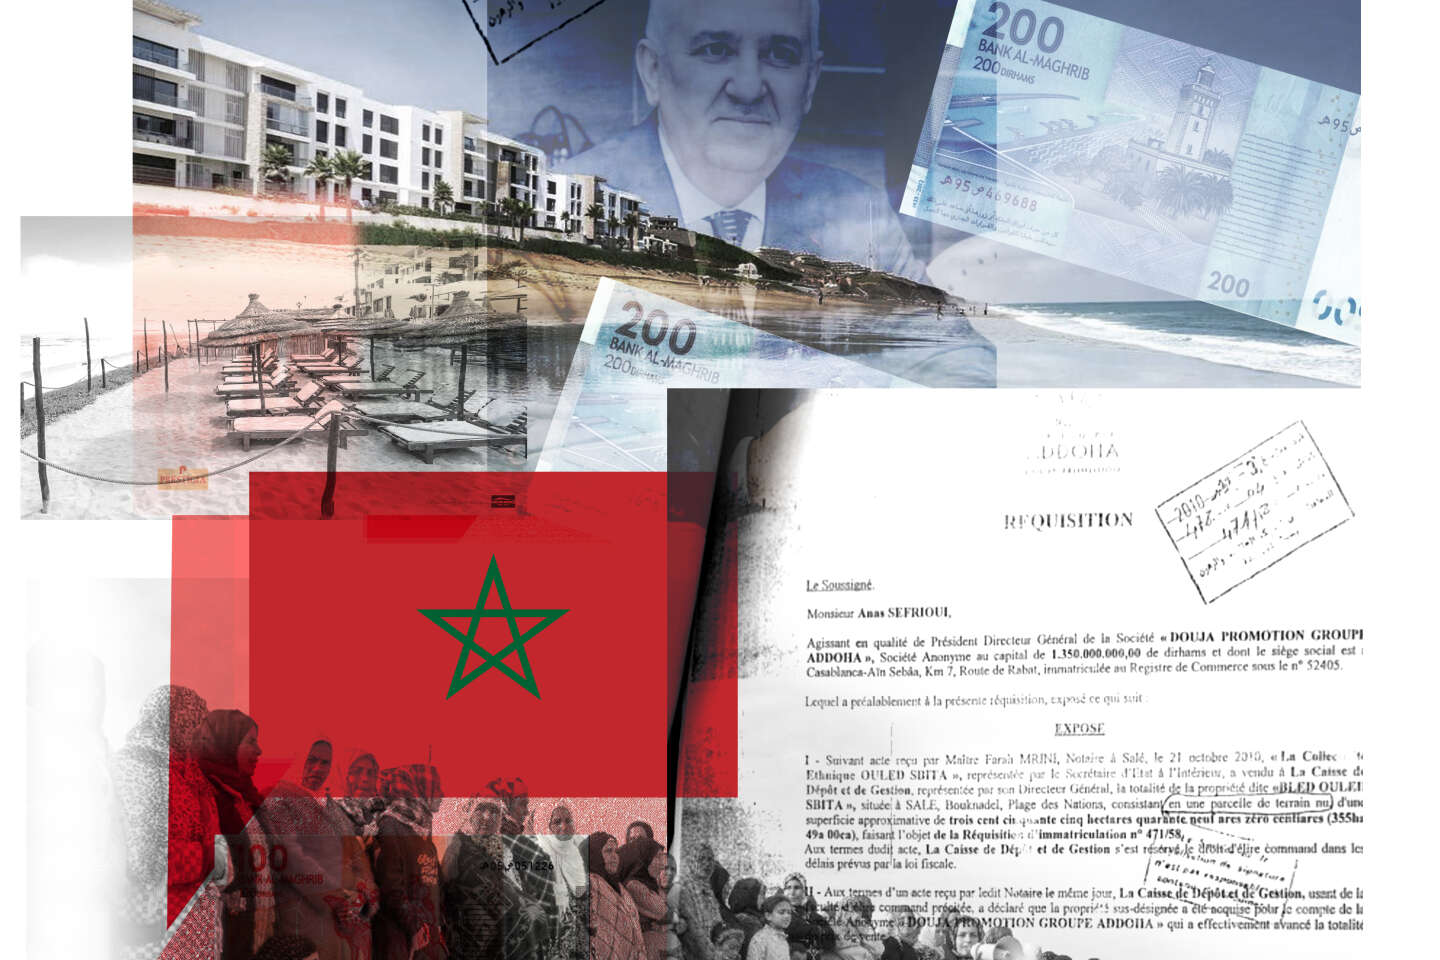 Accaparement de terres, délit d’initiés, soupçons dans l’entourage du roi… Au Maroc, l’enquête interdite d’Omar Radi